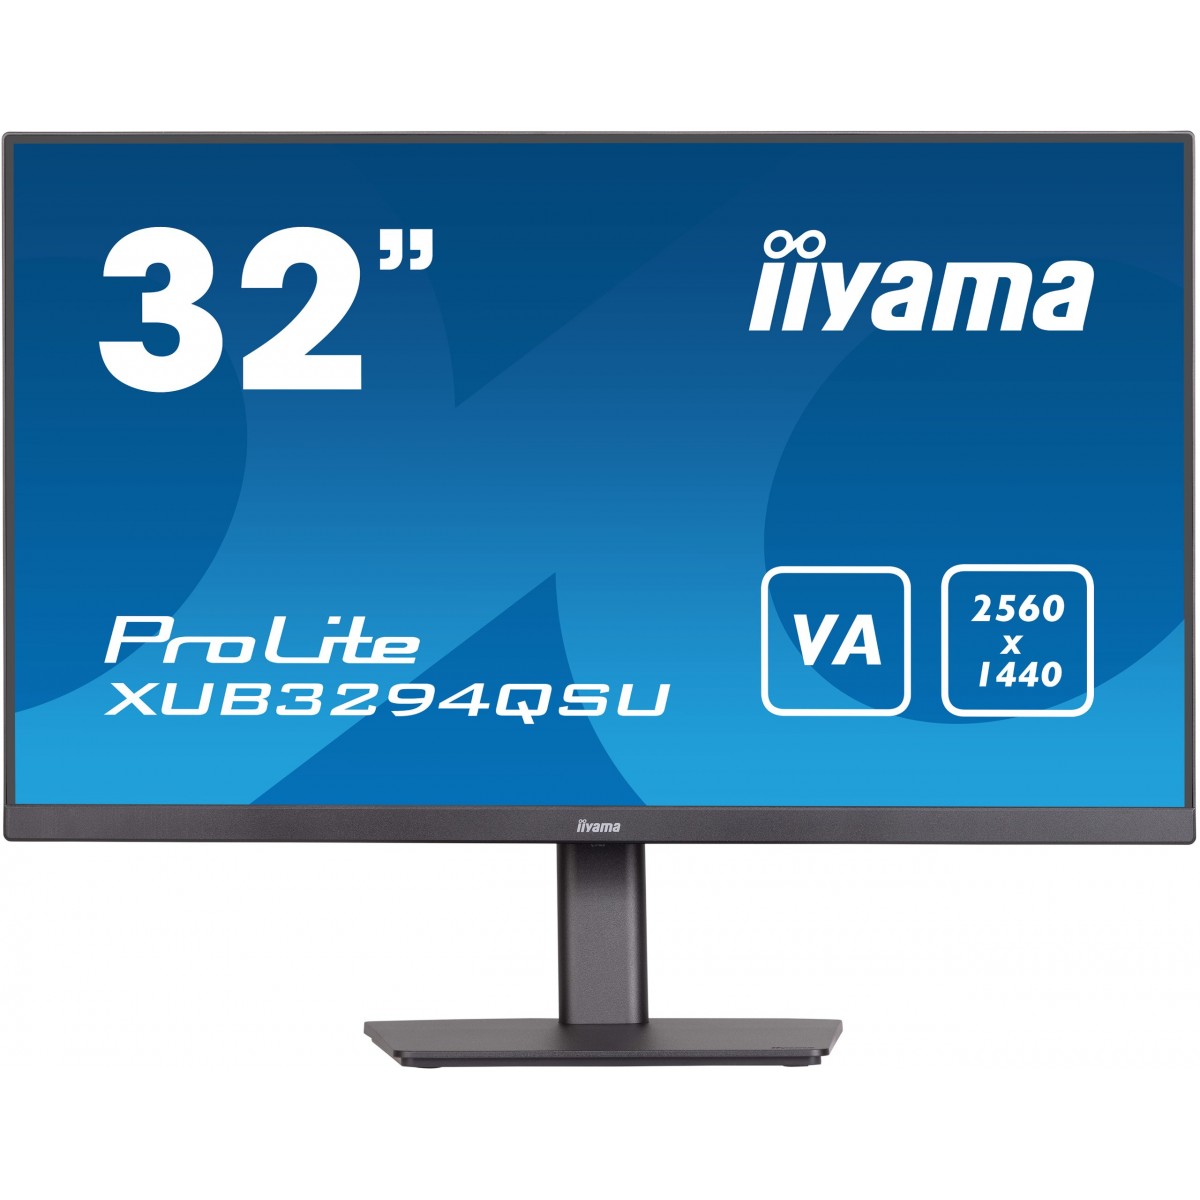 Iiyama 80.0cm 32 XUB3294QSU-B1 16 9 HDMI+DP+2xUSB VA b retail - Flat Screen - 80 cm